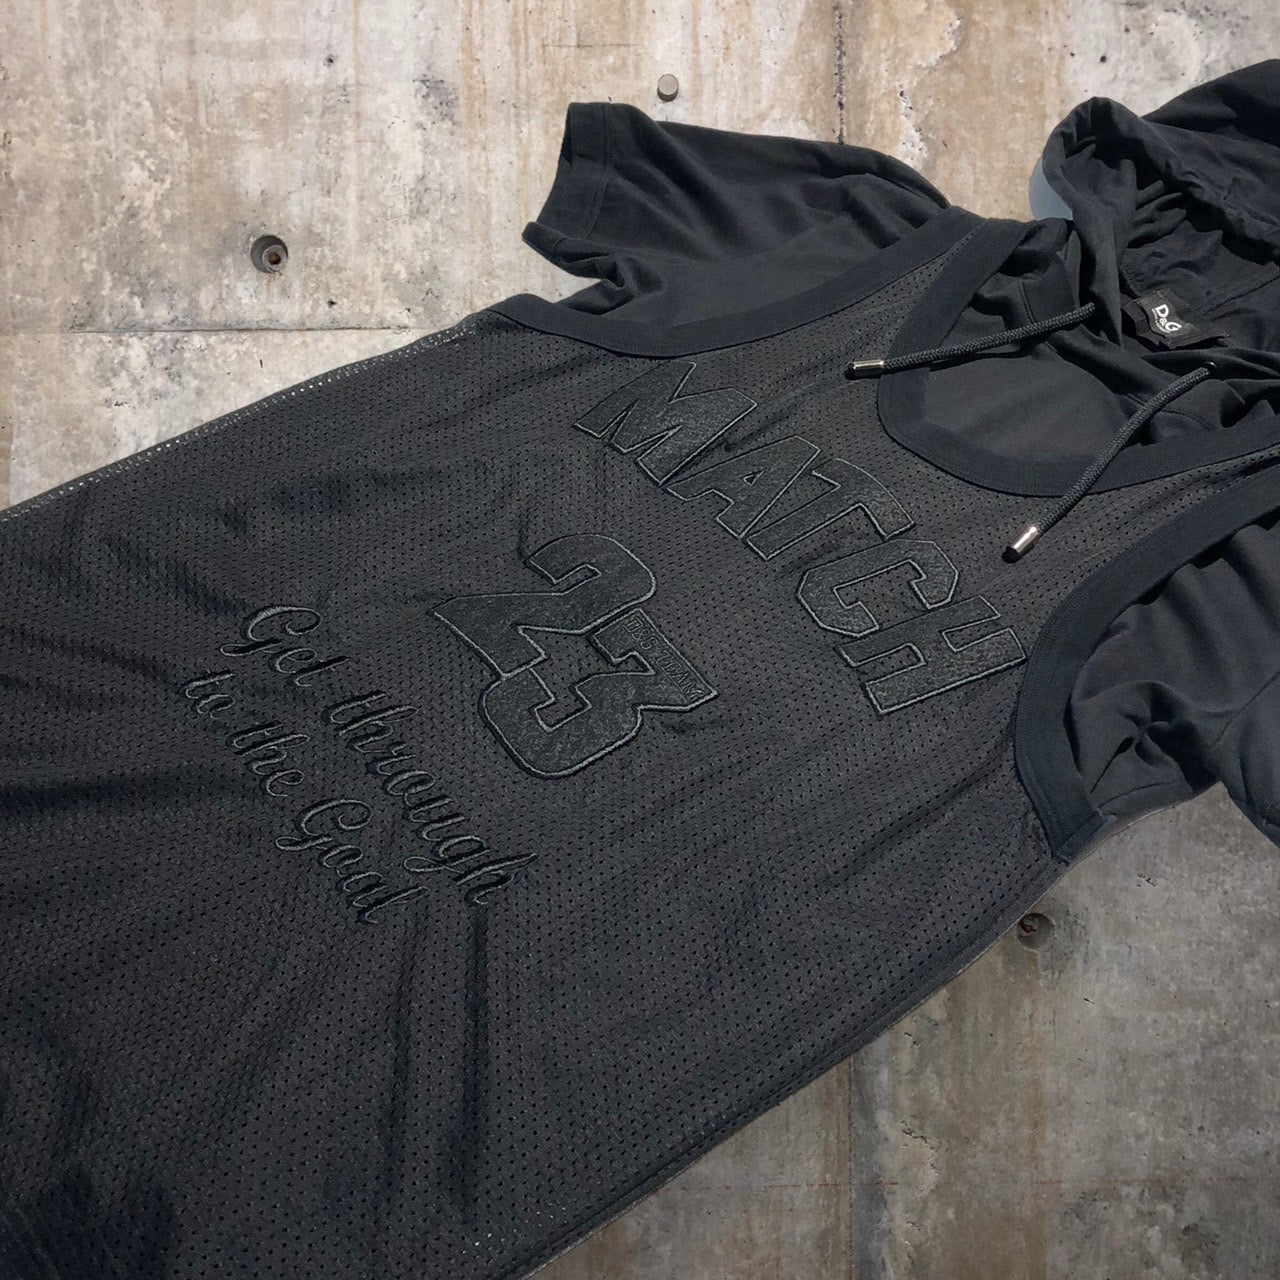 D&G(ディー&ジードルガバドルチェ&ガッバーナ) ゲームシャツドッキングS/Sフーディ 46(Mサイズ程度) ブラック